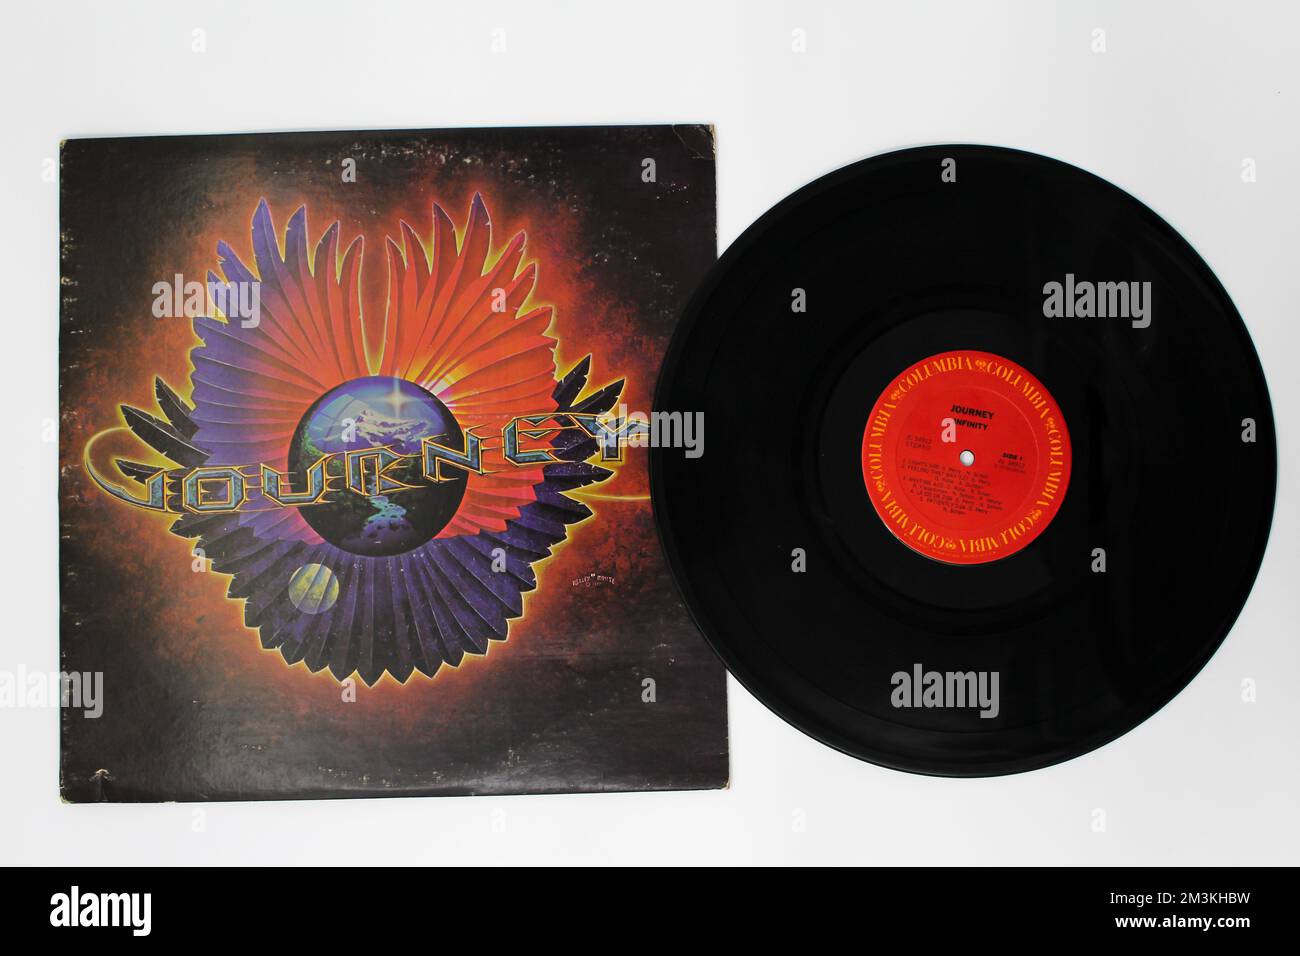 Hard rock and soft rock band, album musicale della band Journey su disco LP con dischi in vinile. Titolo: Copertina dell'album Infinity Foto Stock